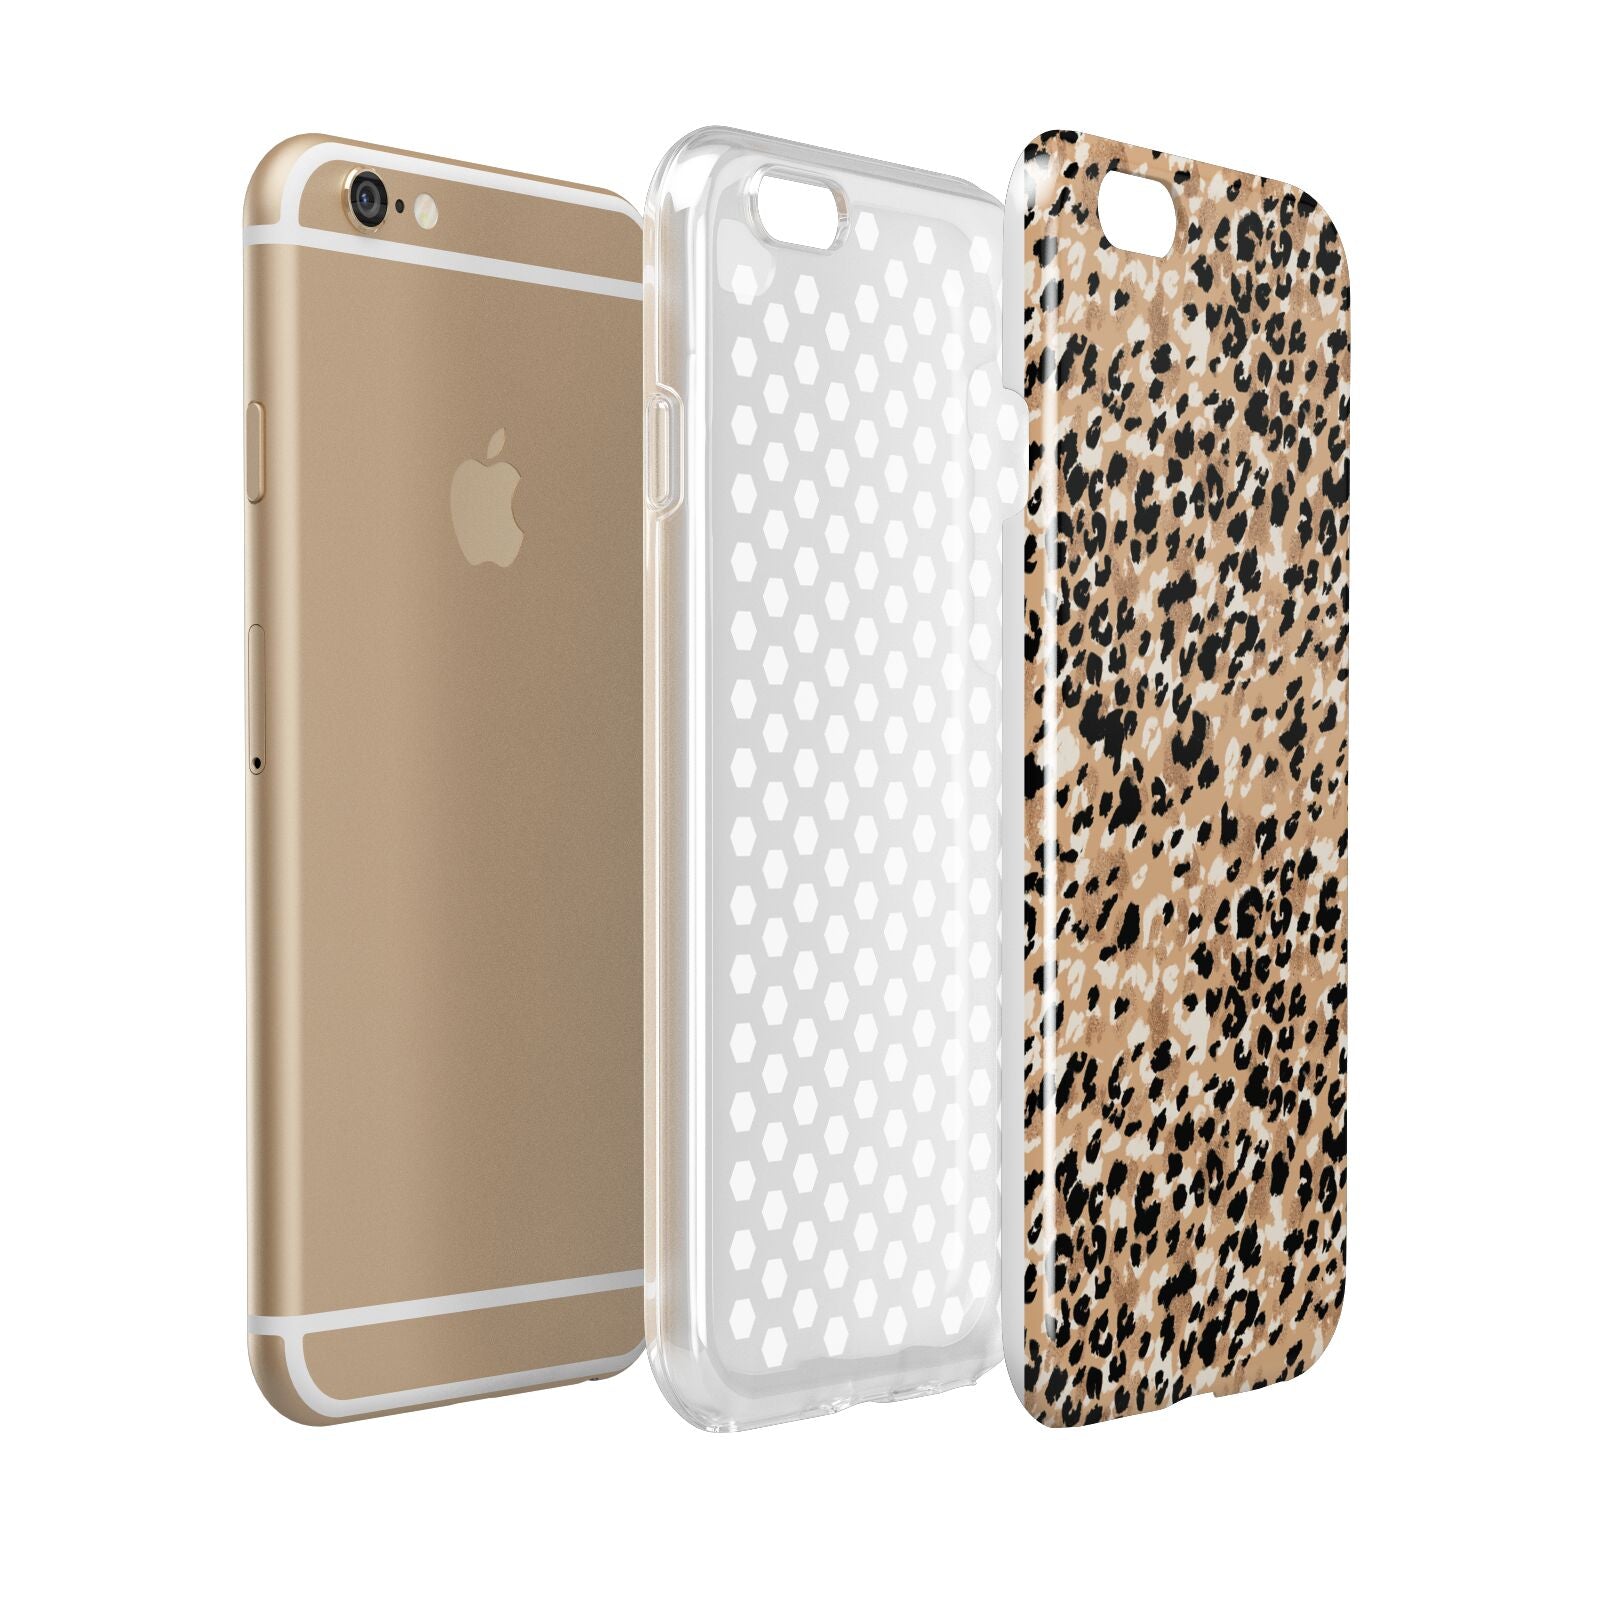 Leopard Print Apple iPhone 6 3D Tough Case Expanded view